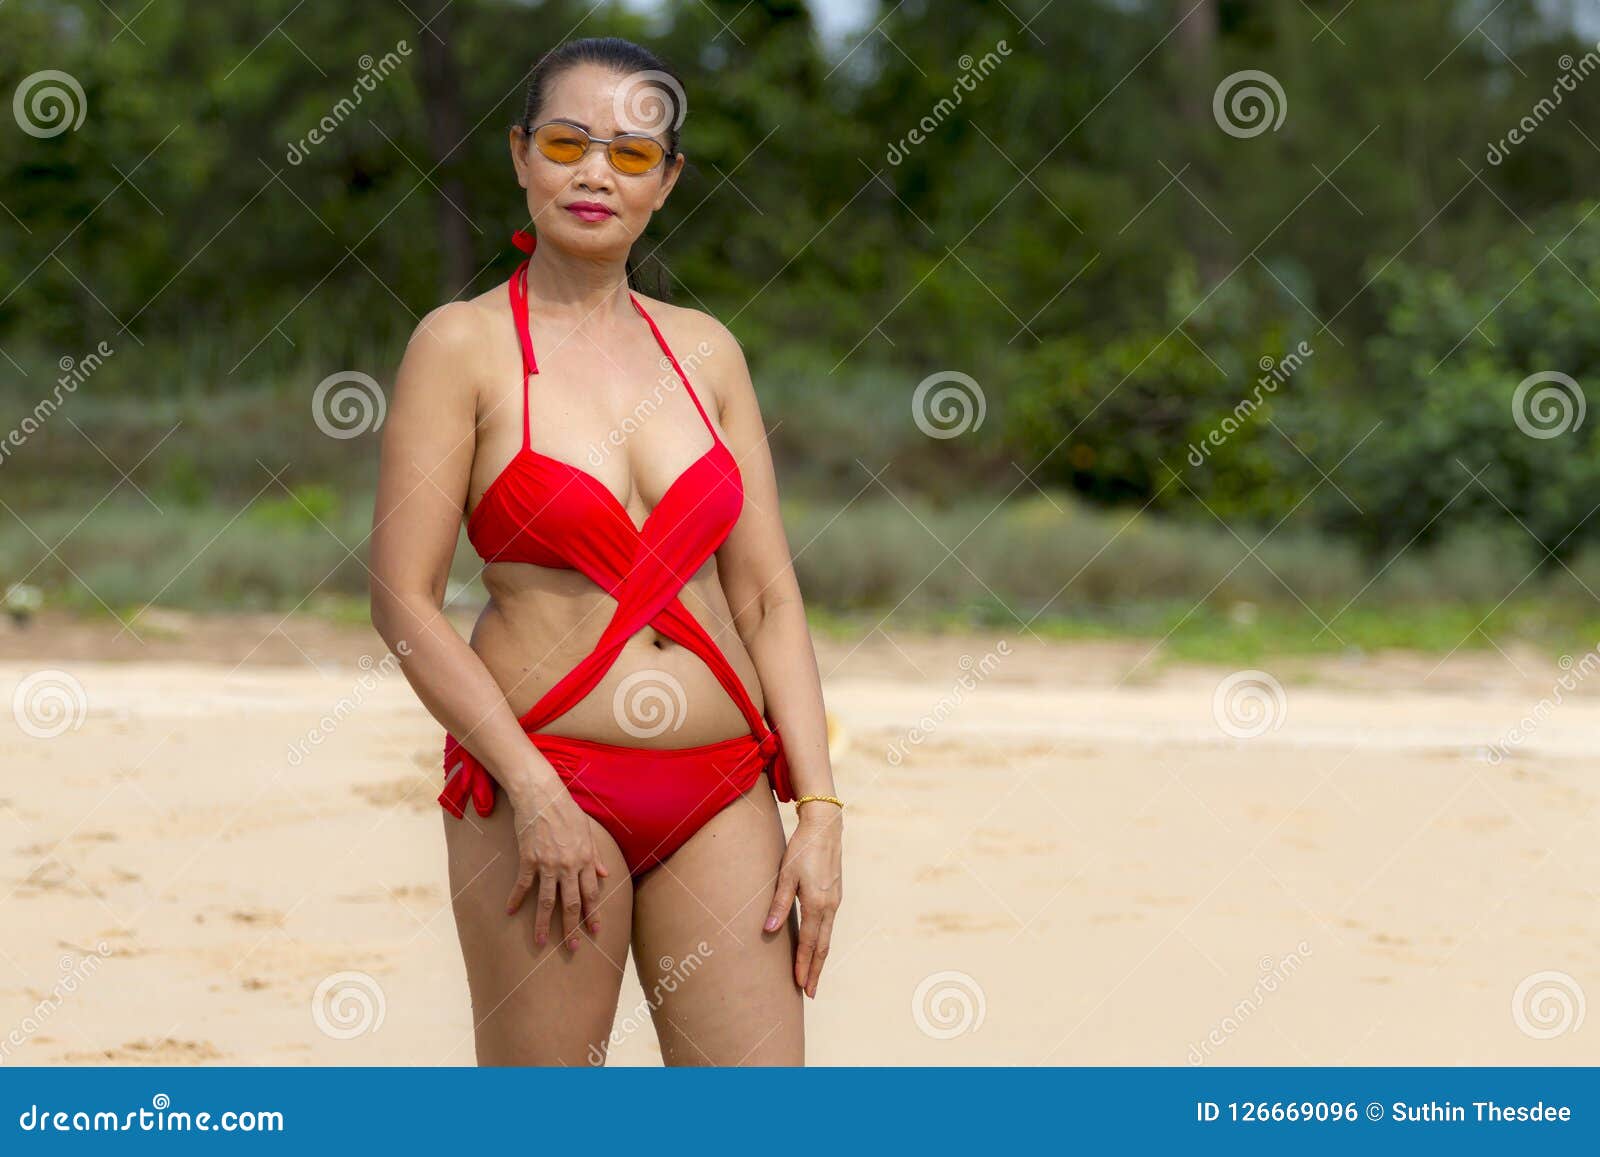 Woman In Red Bikini Sex Symbol With Sunshine On Beach